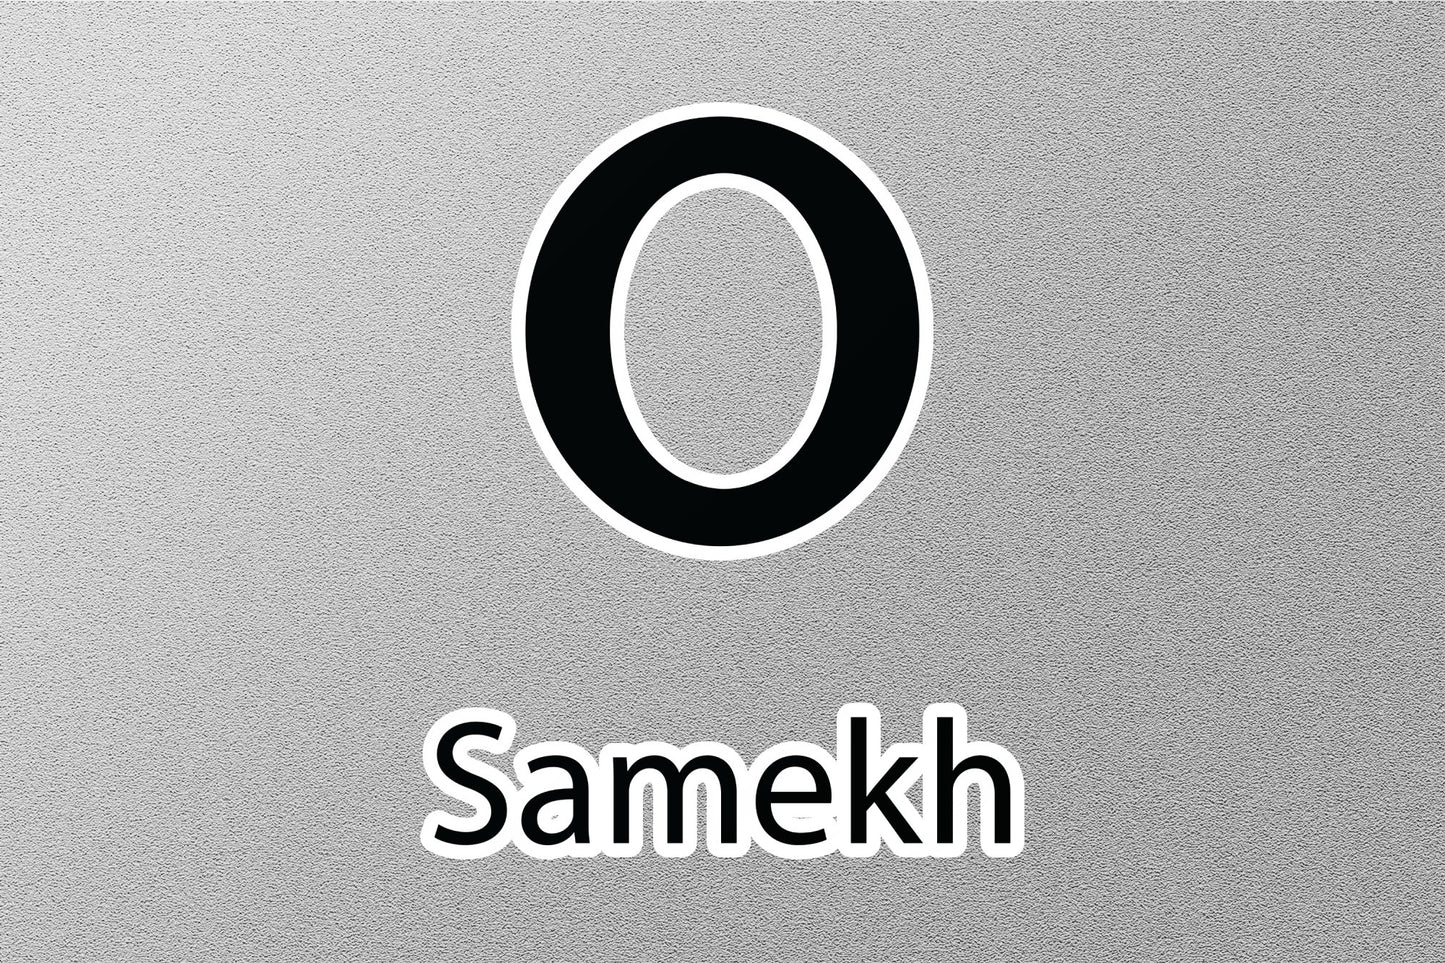 Samekh Hebrew Alphabet Sticker